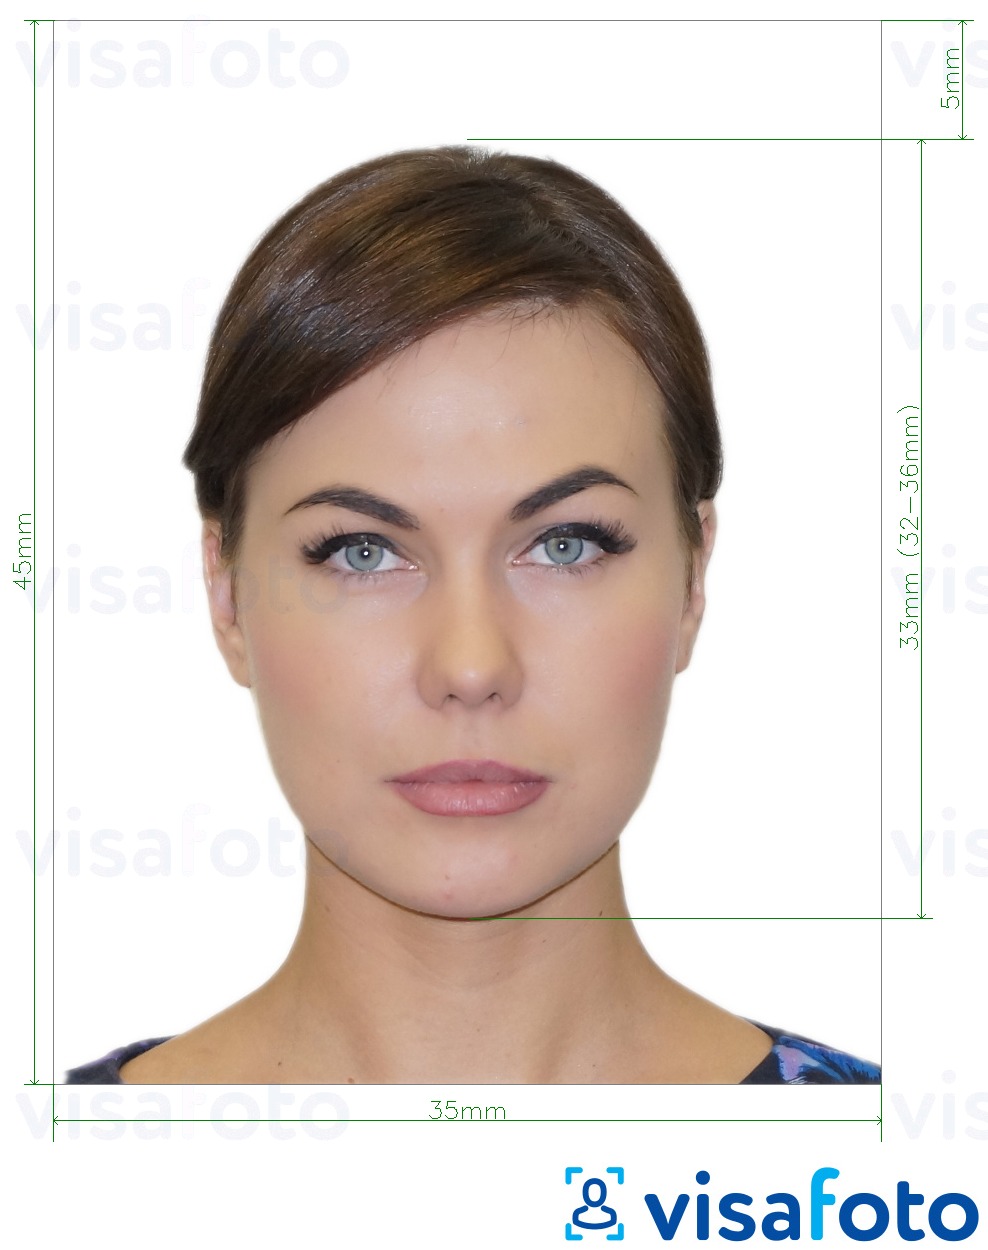 Przykład zdjęcia dla Rosyjski Fan ID  pikseli z podaniem dokładnego rozmiaru.